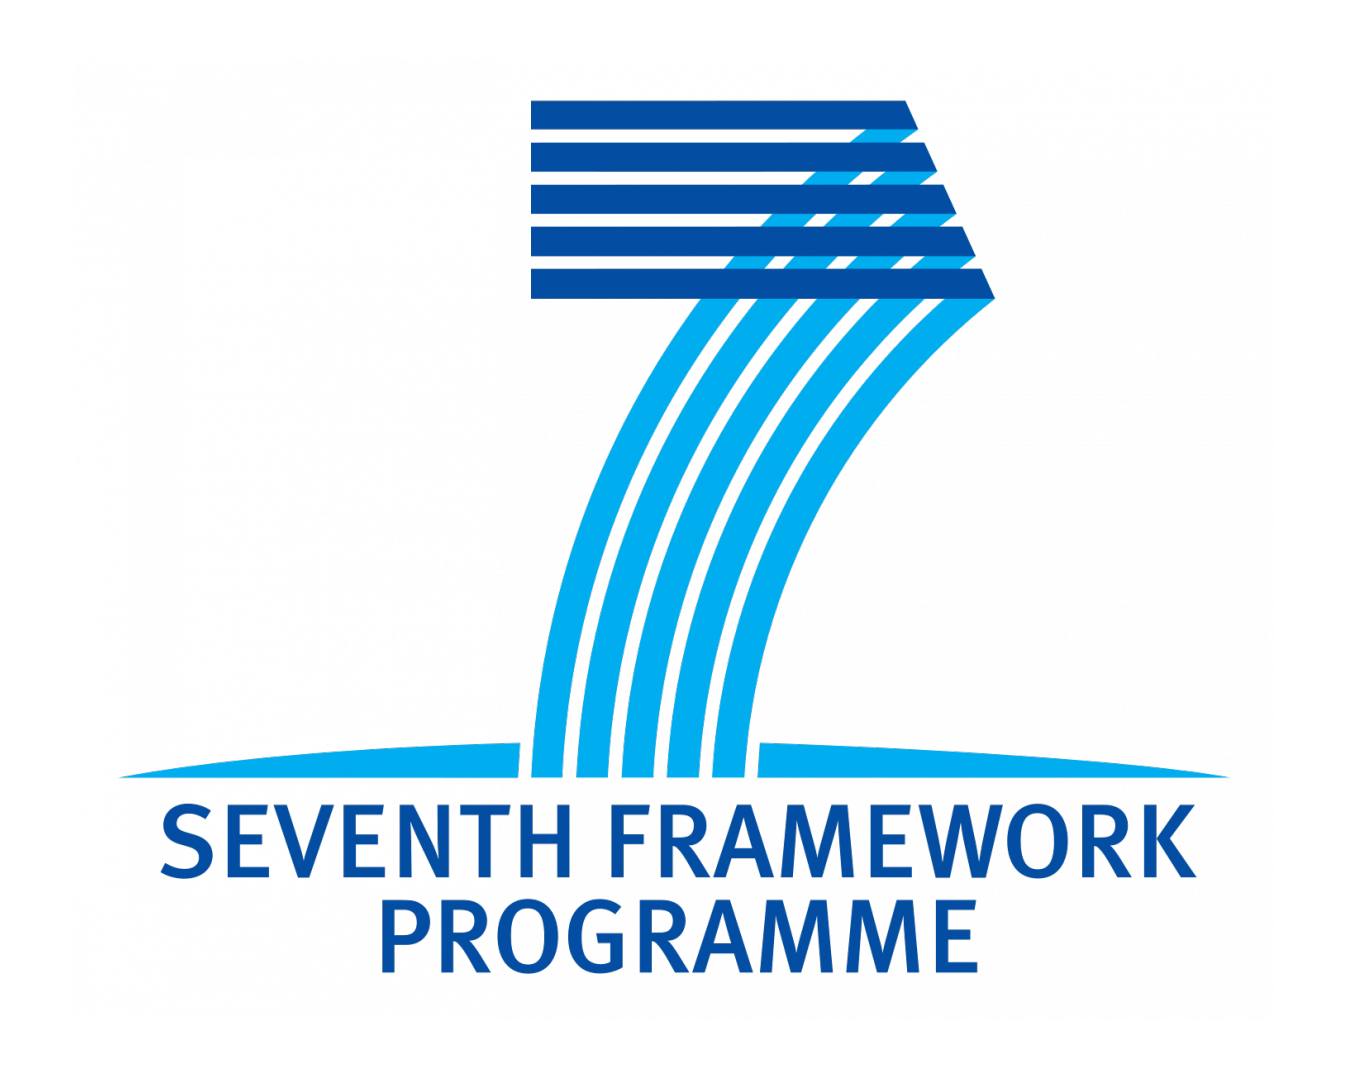 Seventh_Framework_Programme_logo.png